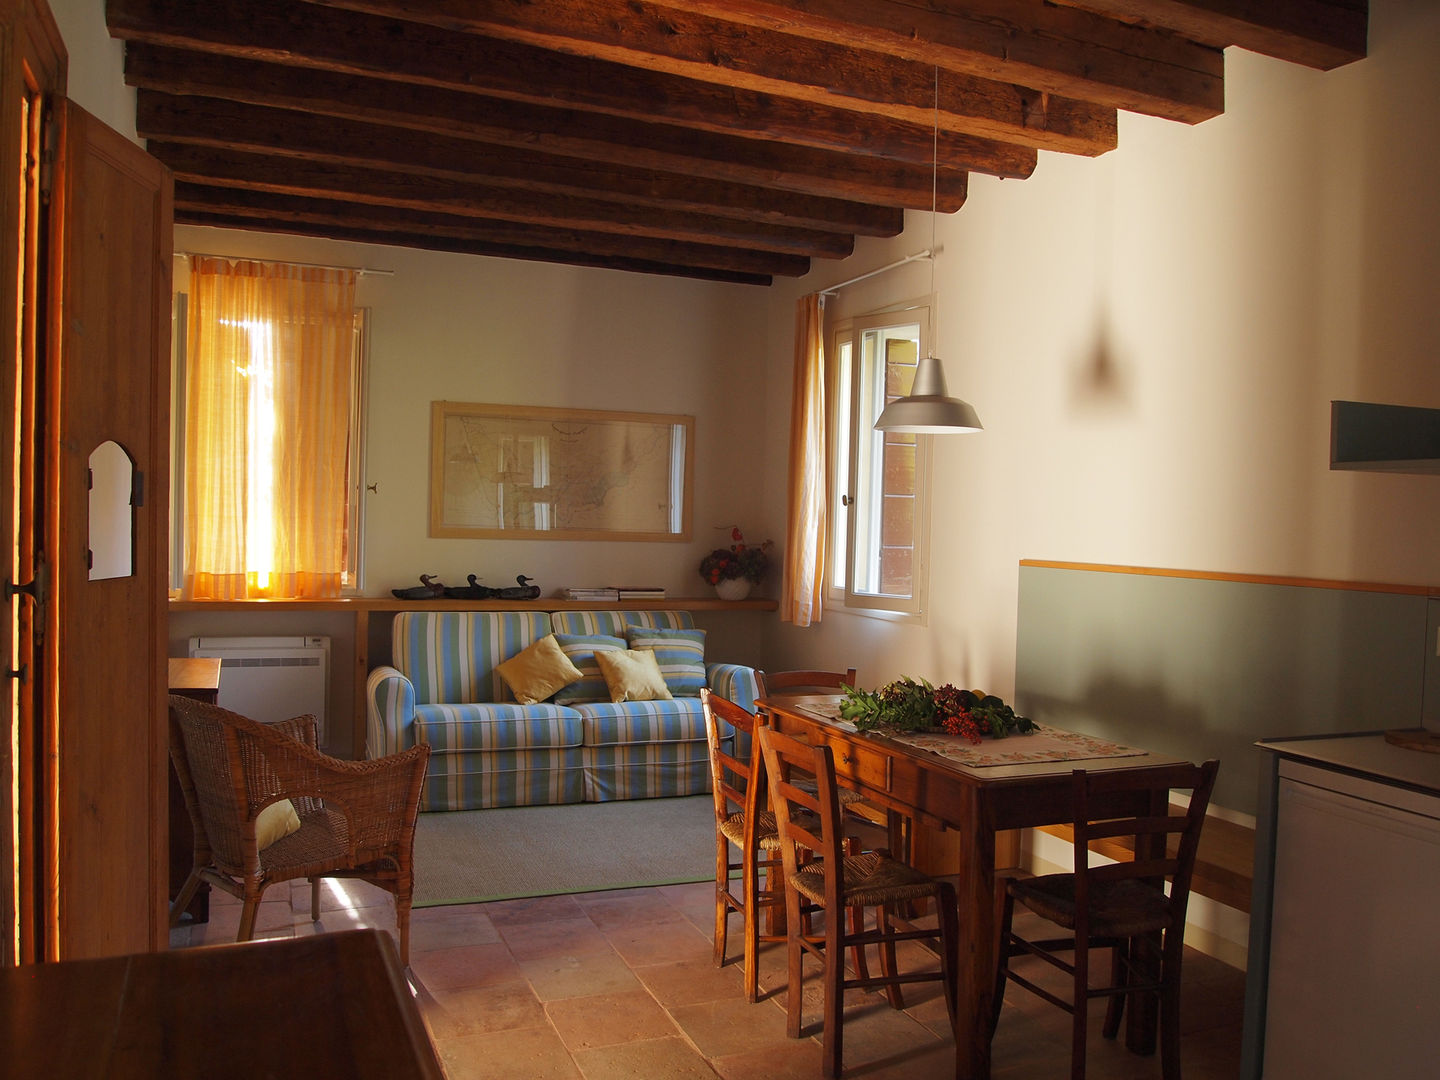 Bed & Breakfast nelle adiacenze di villa Tron Mioni, Alberto Garzotto Architetto Alberto Garzotto Architetto Houses